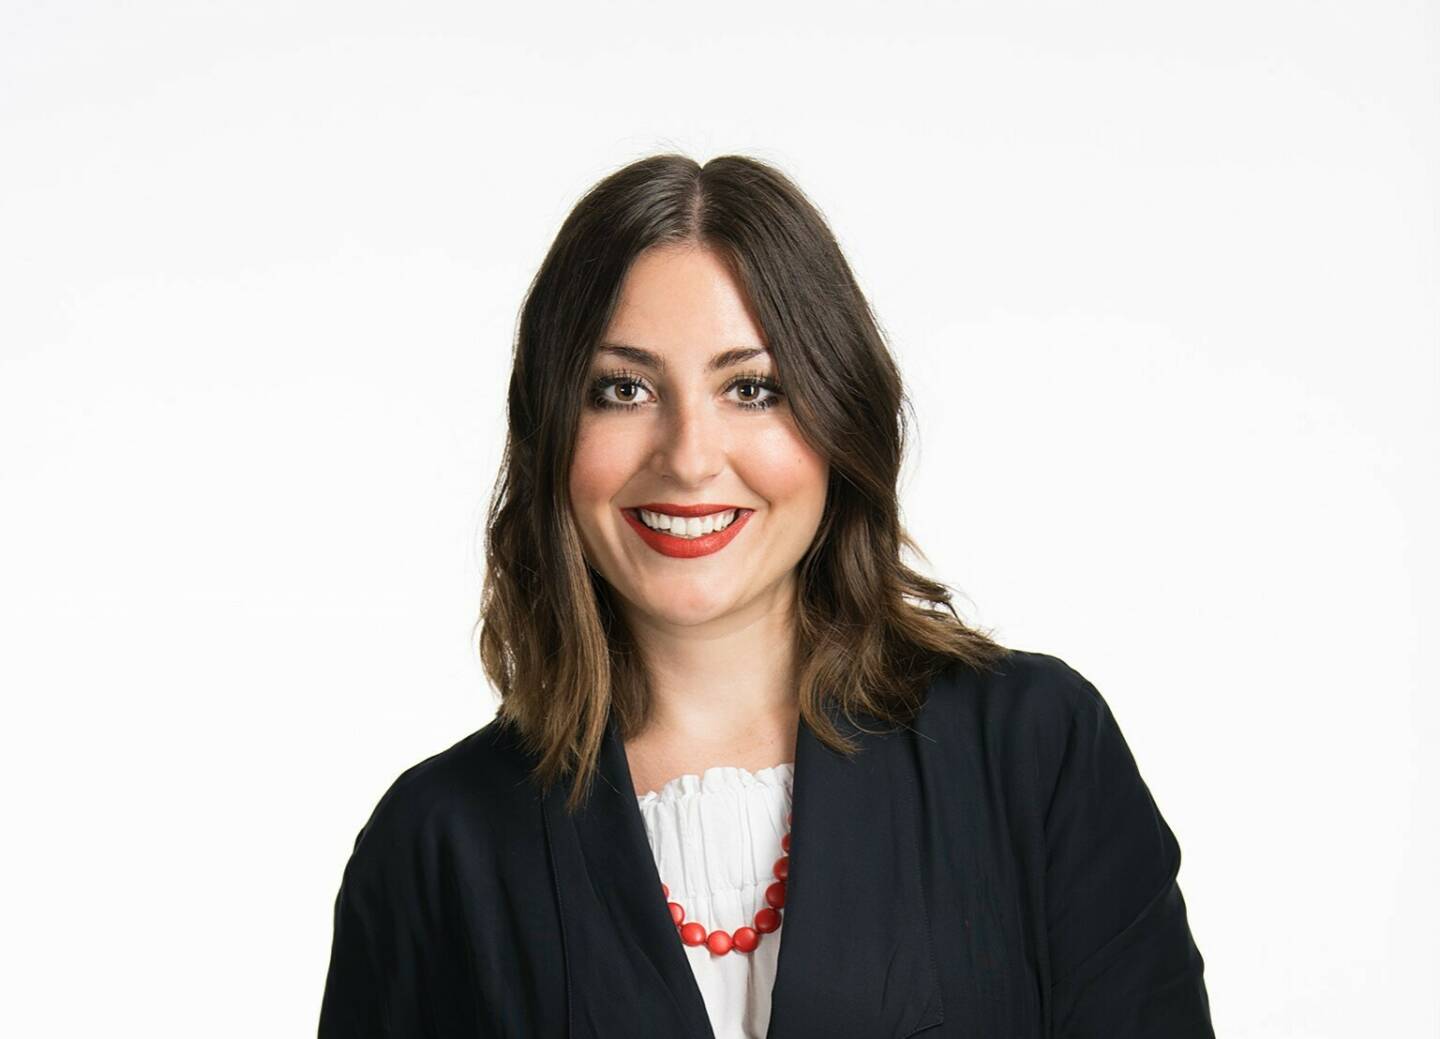 Austria Wirtschaftsservice: Carina Margreiter ist neue Abteilungsleiterin für Entrepreneurship und Kreativwirtschaft in der aws; Fotocredit:aws